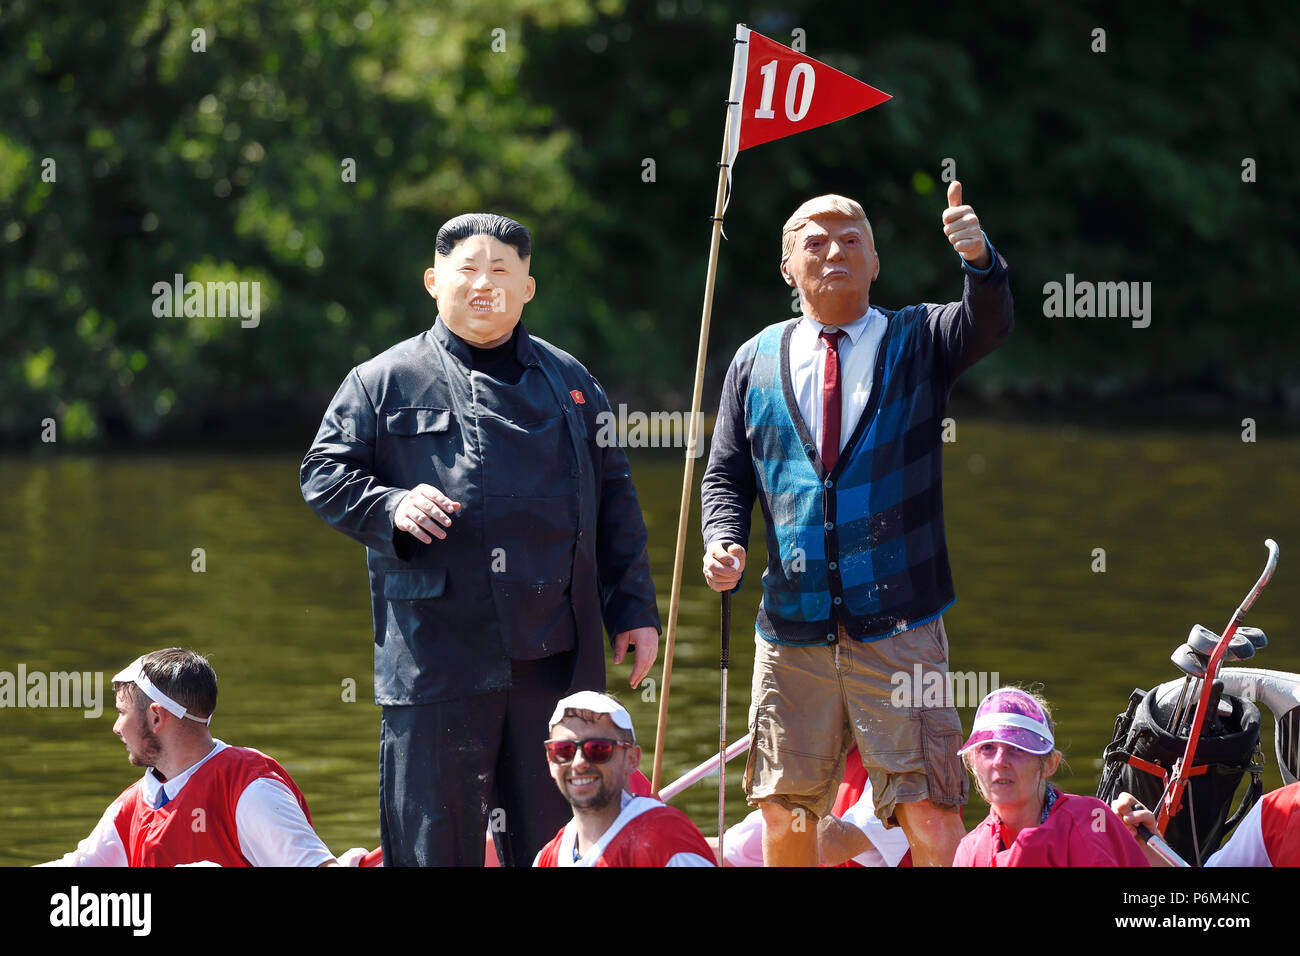 Chester, Royaume-Uni. 1er juillet 2018. Donald Trump et Kim Jong-un assimilés participent à la course annuelle de raft sur la rivière Dee organisée par le Rotary Club. Crédit : Andrew Paterson/Alamy Live News Banque D'Images